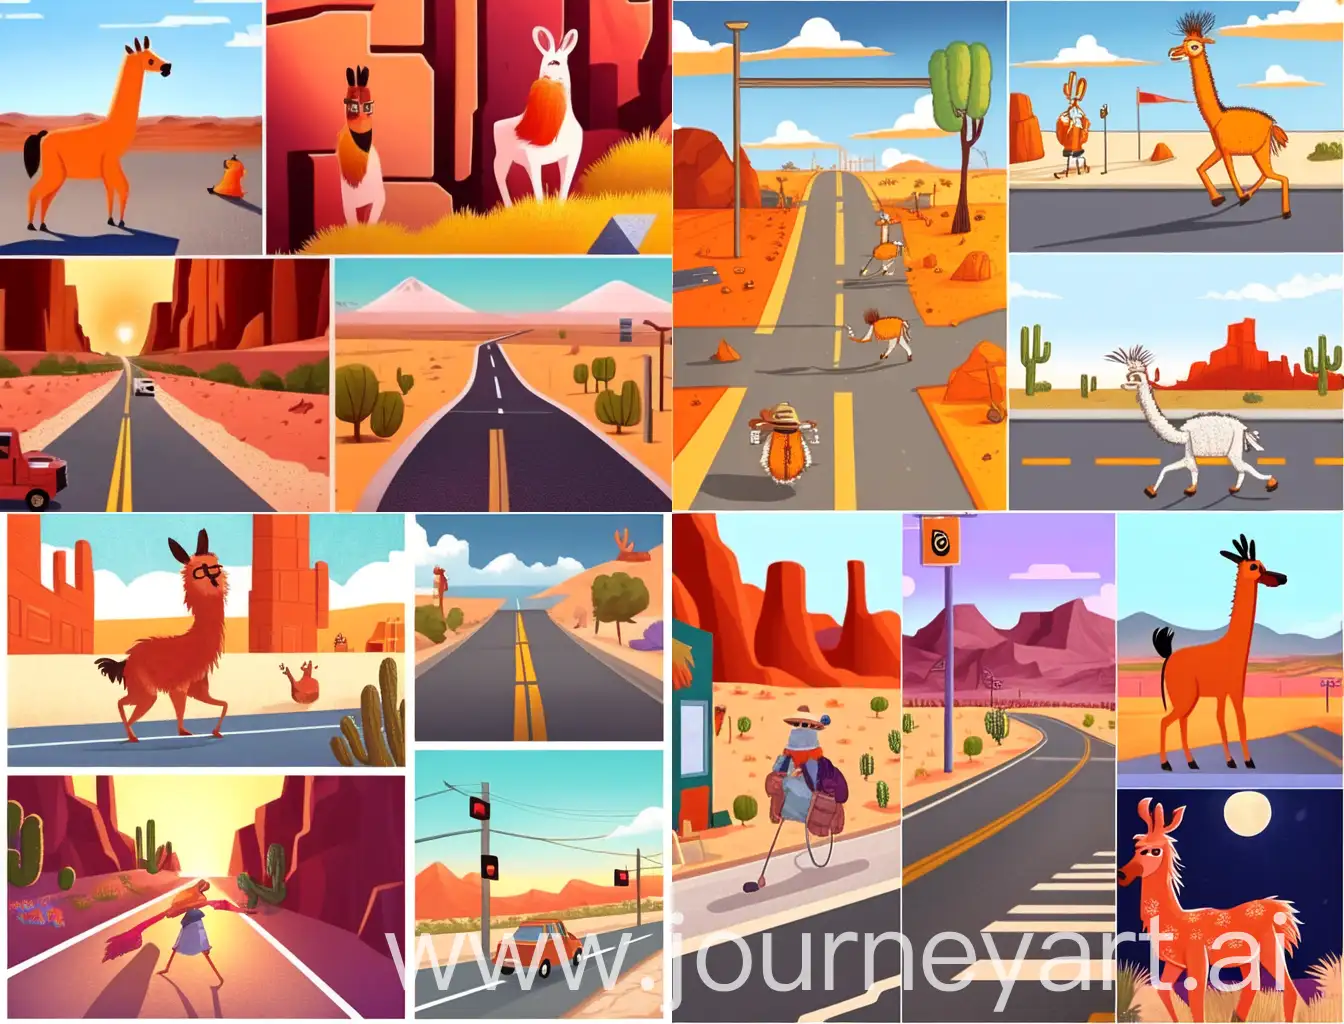 Orange-Llama-Adventures-Across-Various-Urban-and-Rural-Settings